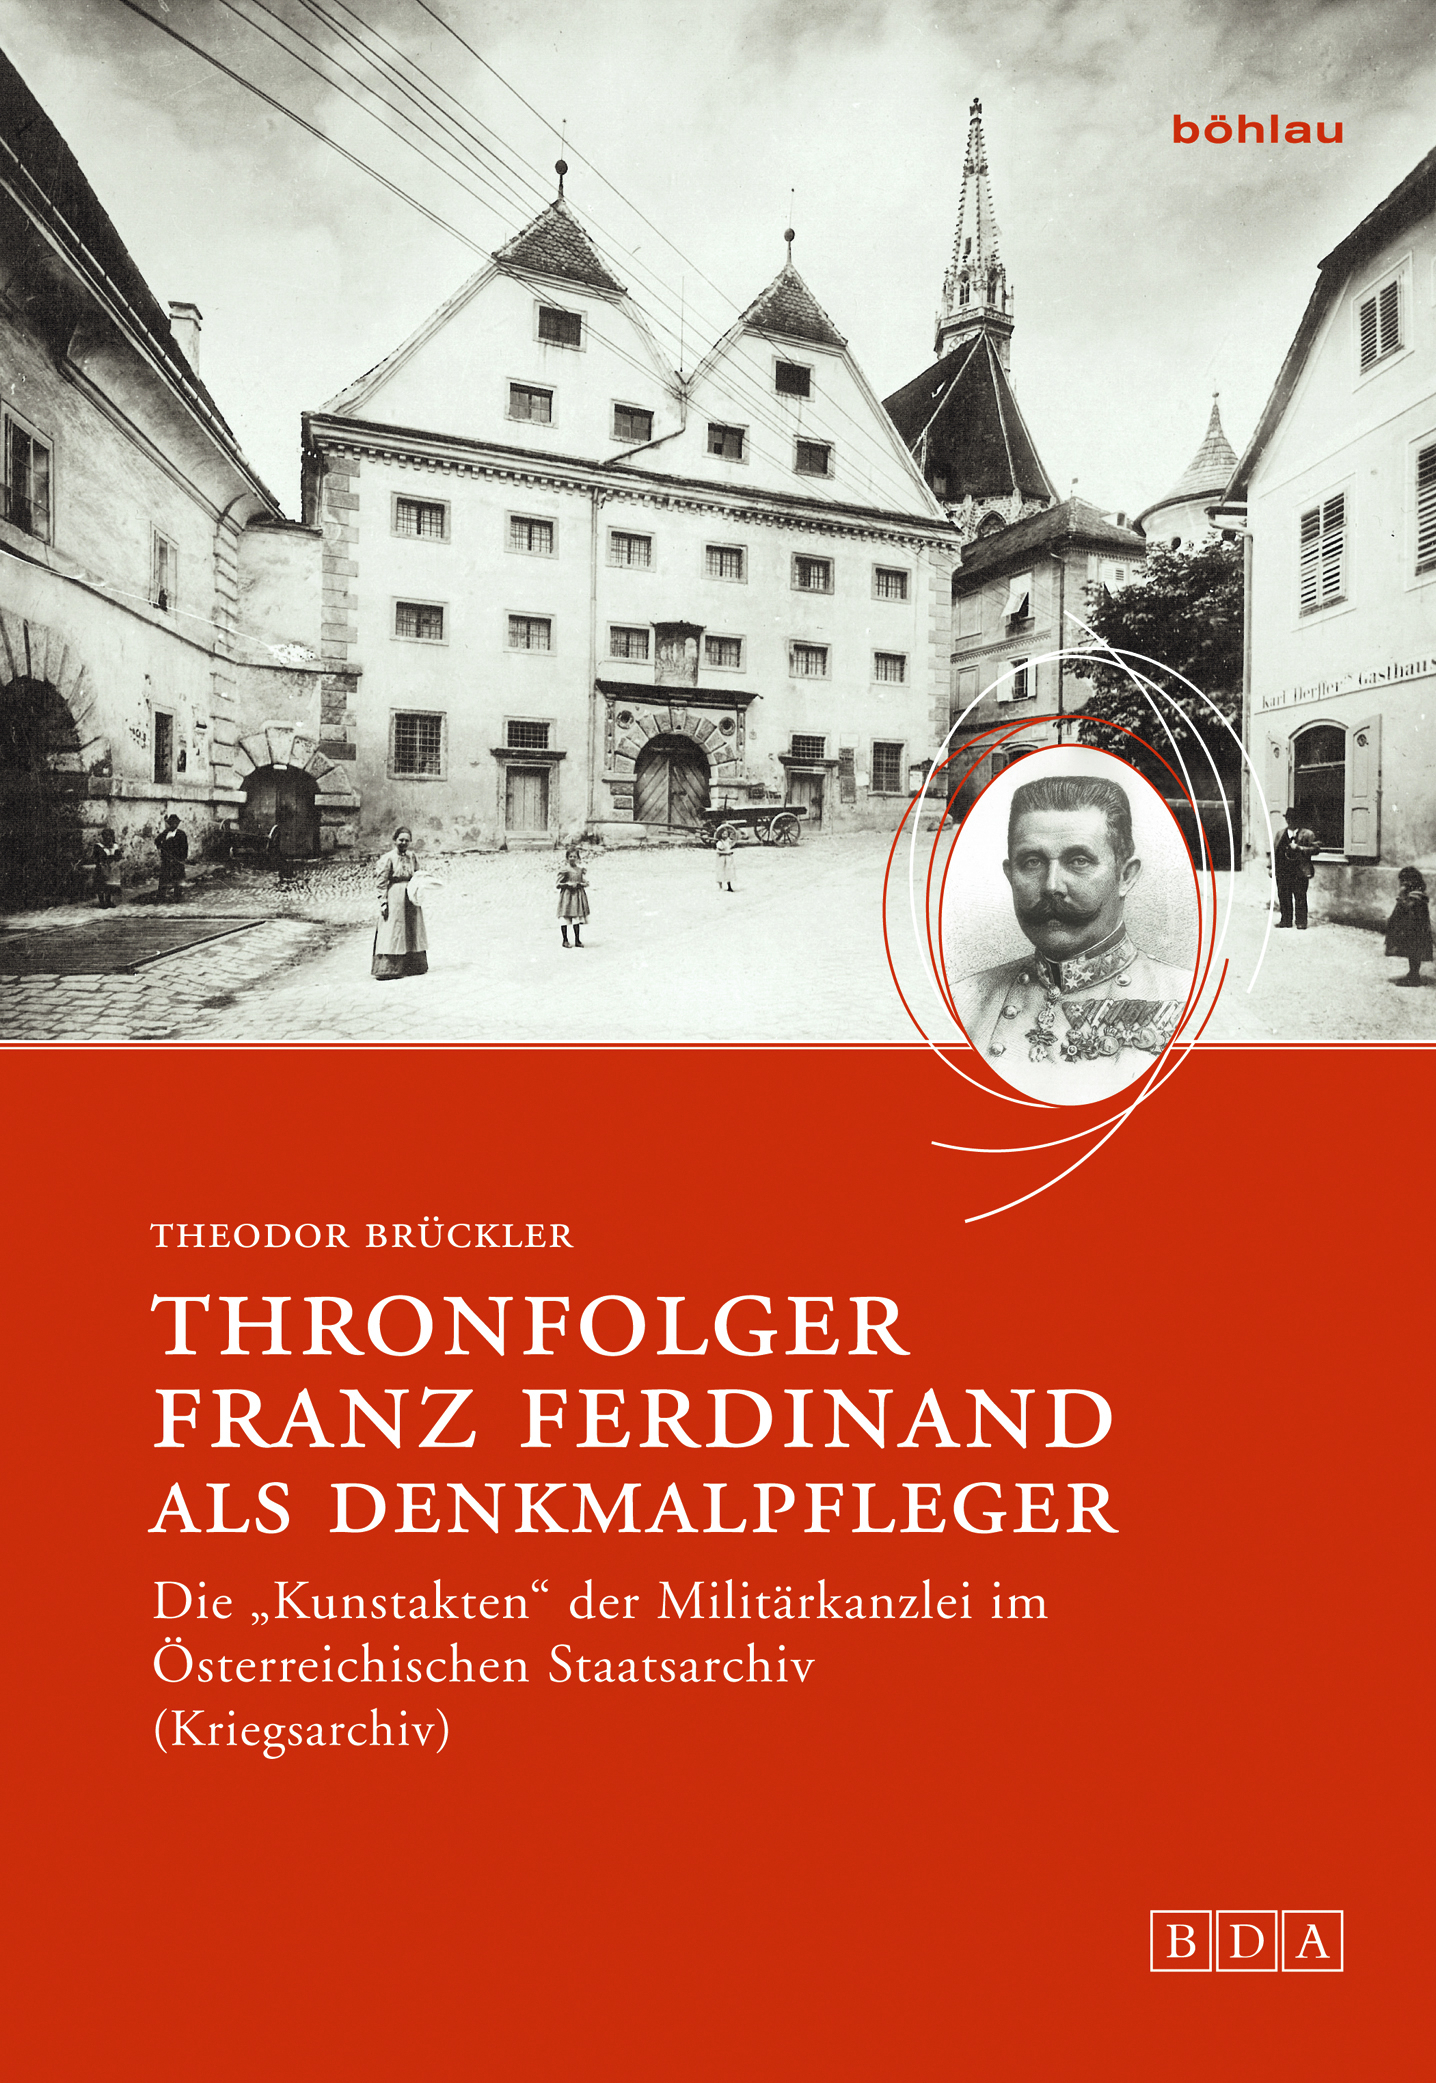 Theodor Brückler / Thronfolger Franz Ferdinand als Denkmalpfleger - Bild 1 von 1